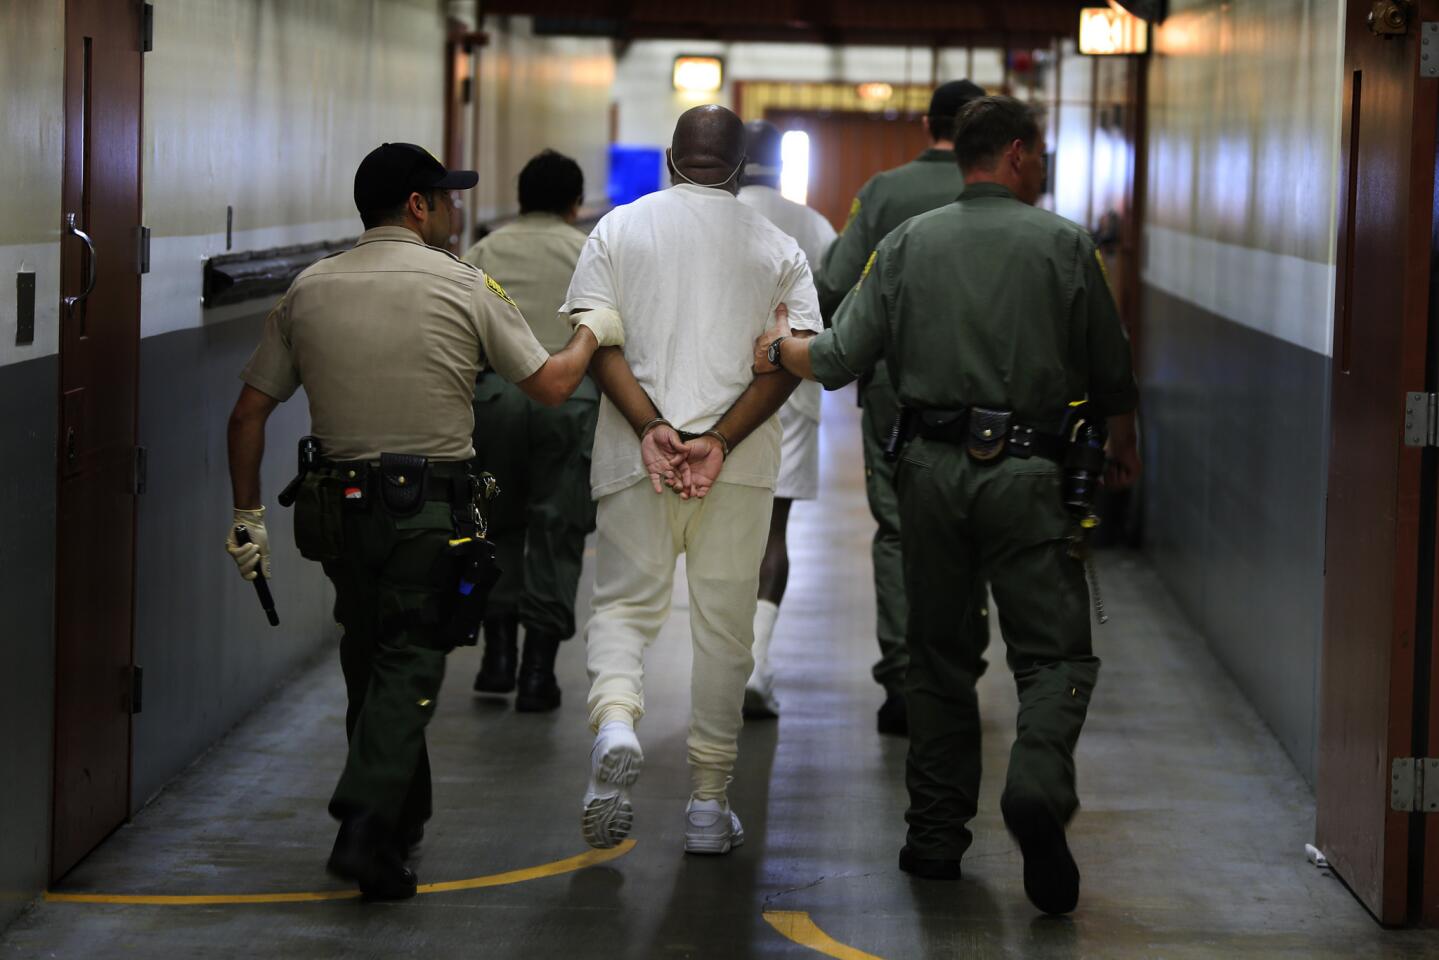 Inmates escorted